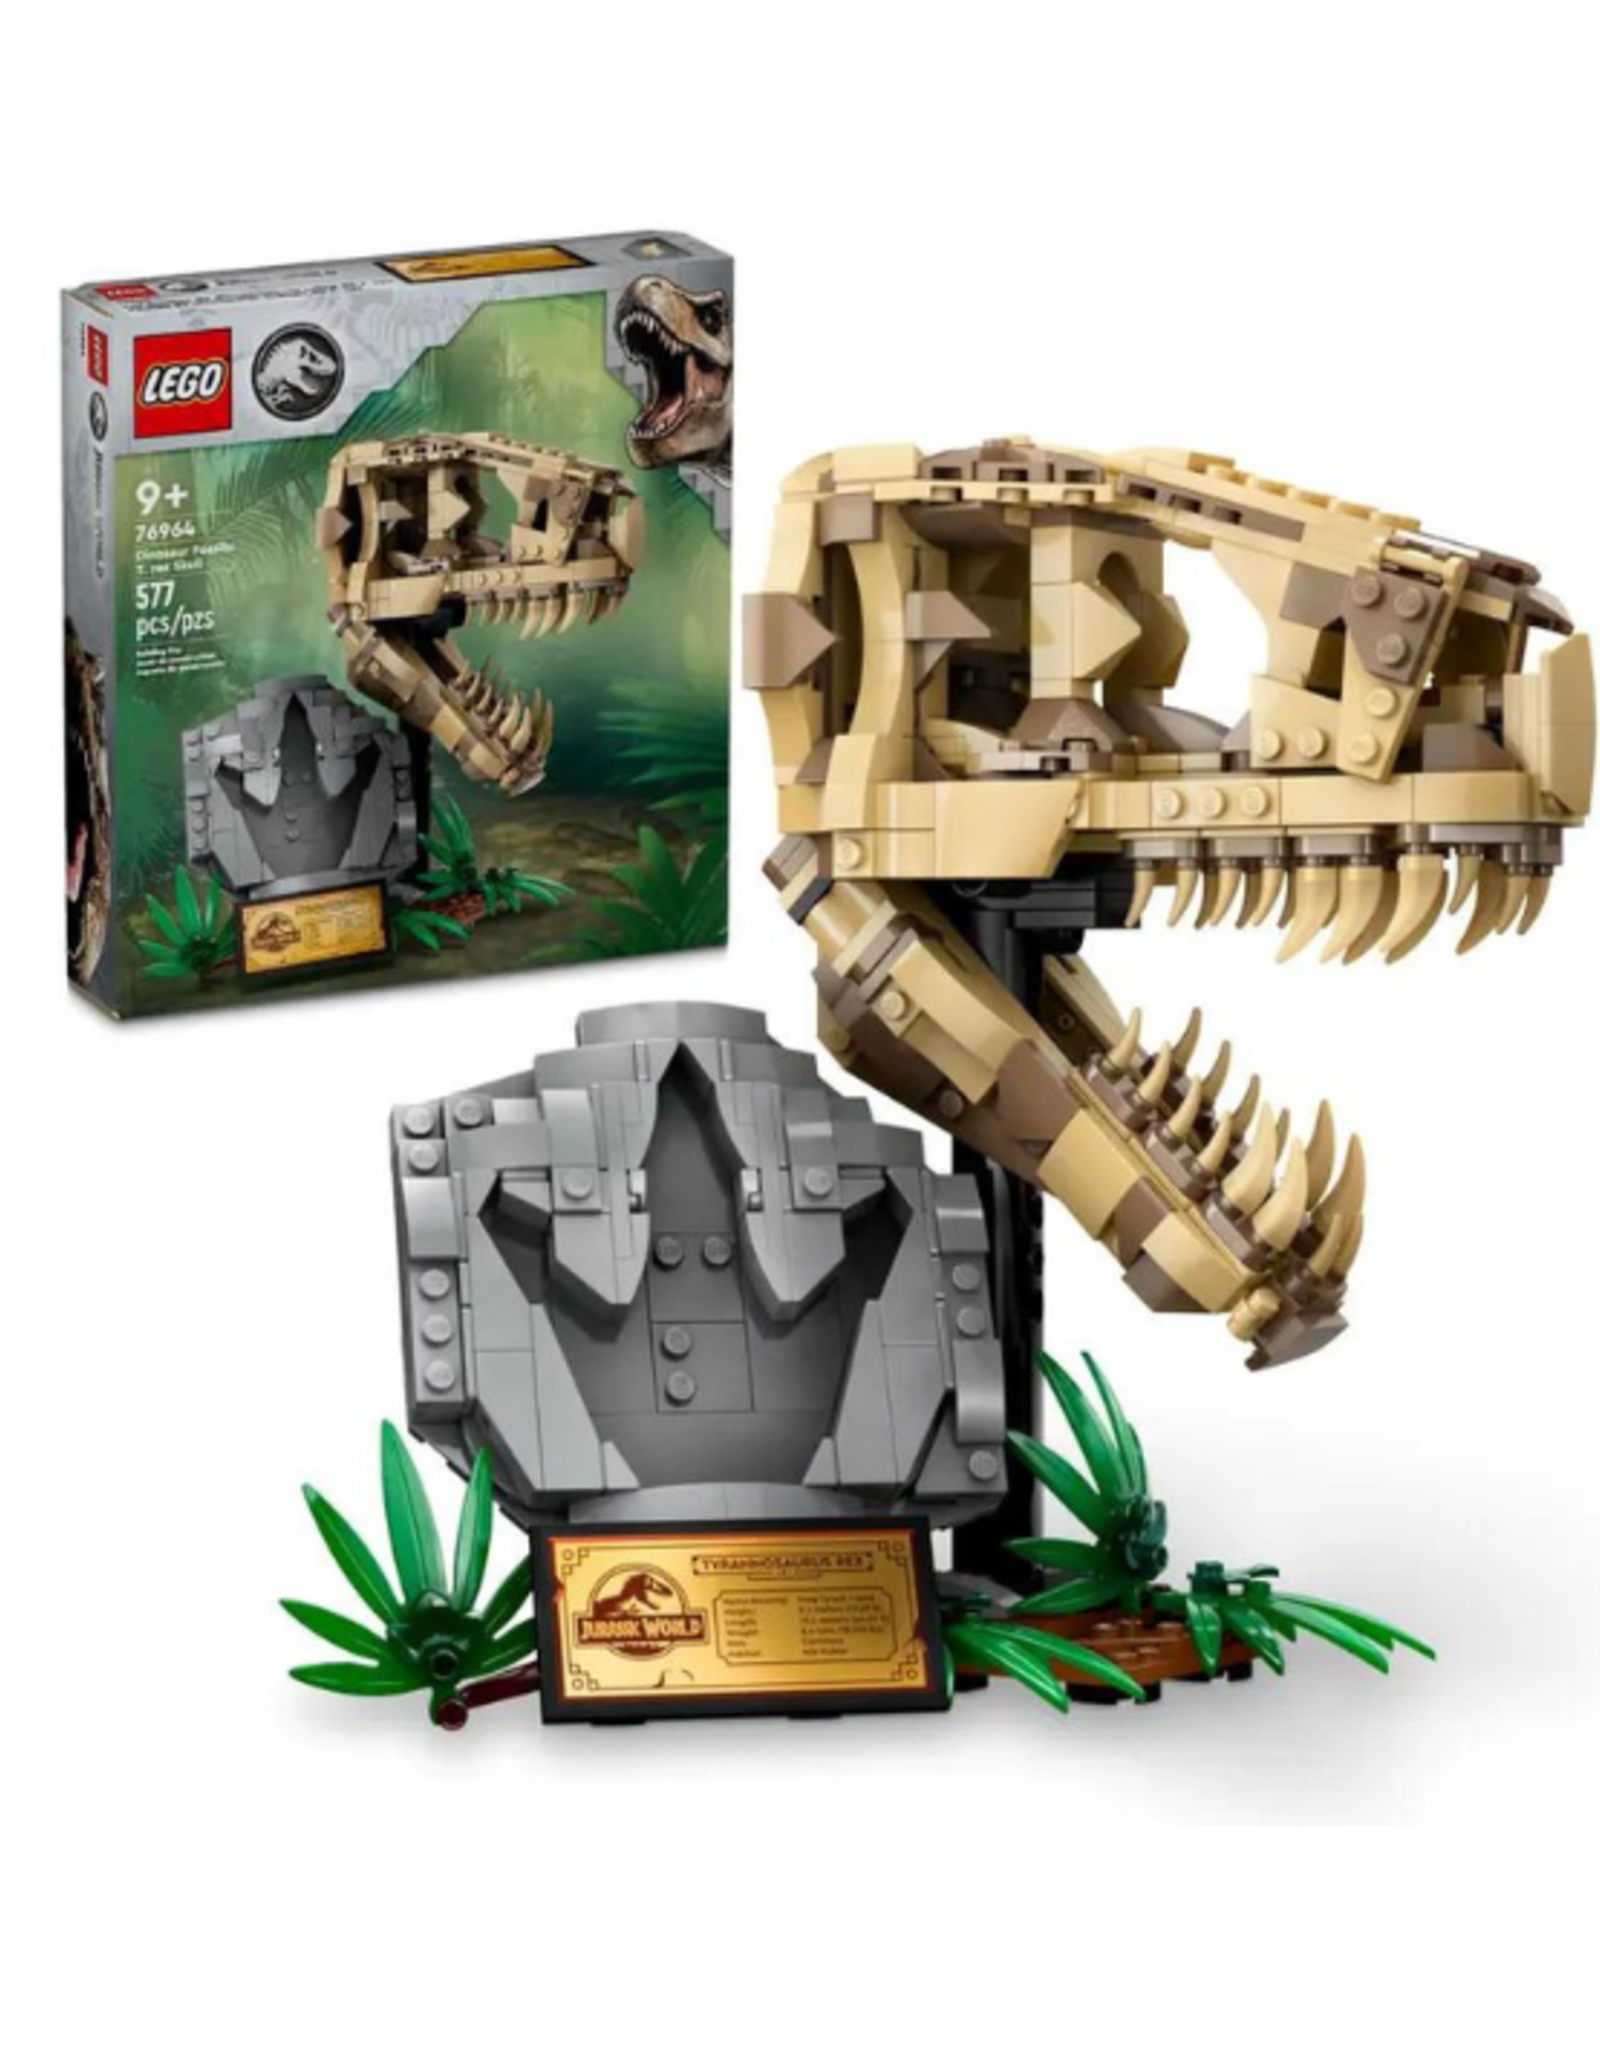 Lego Lego - Jurassic World - 76964 - Dinosaur Fossils: T. rex Skull